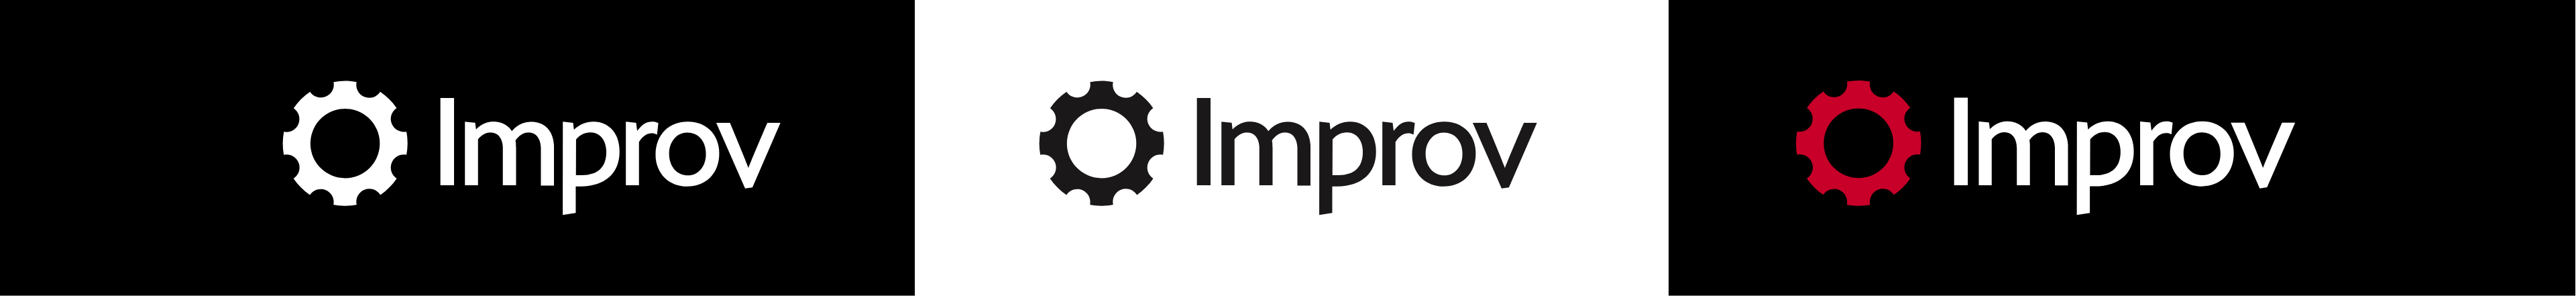 Improv Logo Alternates